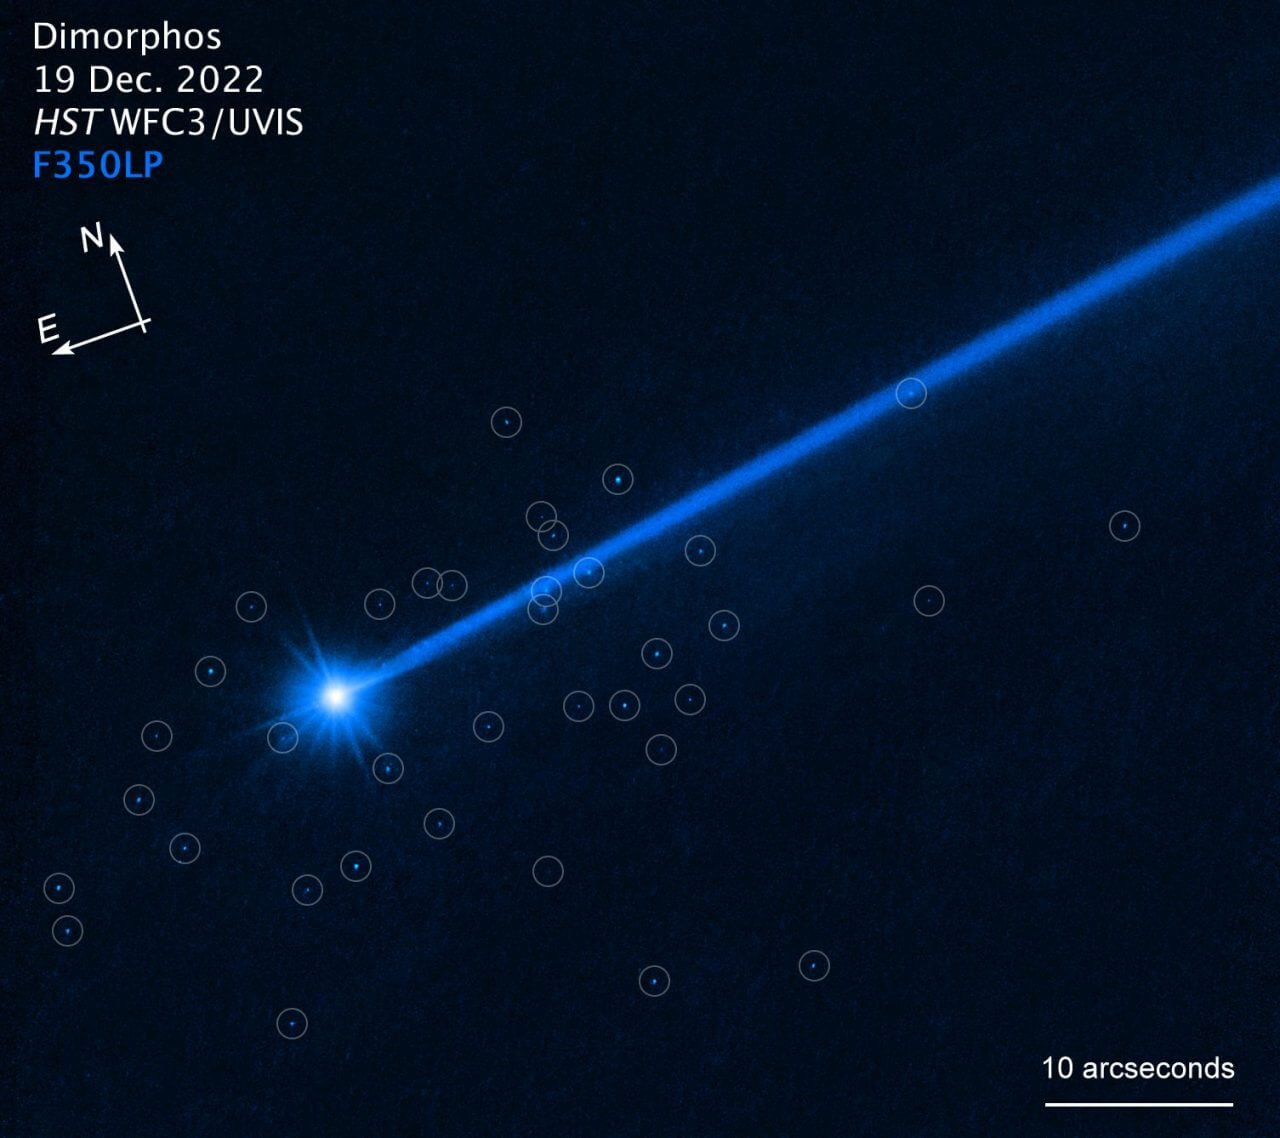 [▲ الشكل 1: 37 صخرة خرجت من ديمورفوس (نقاط الضوء في الدائرة) تم تصويرها بواسطة تلسكوب هابل الفضائي. يقدر القطر بـ 1-7 م.  (الائتمان: ناسا، وكالة الفضاء الأوروبية، ديفيد جيويت (UCLA) وأليسا باغان (STScI))]